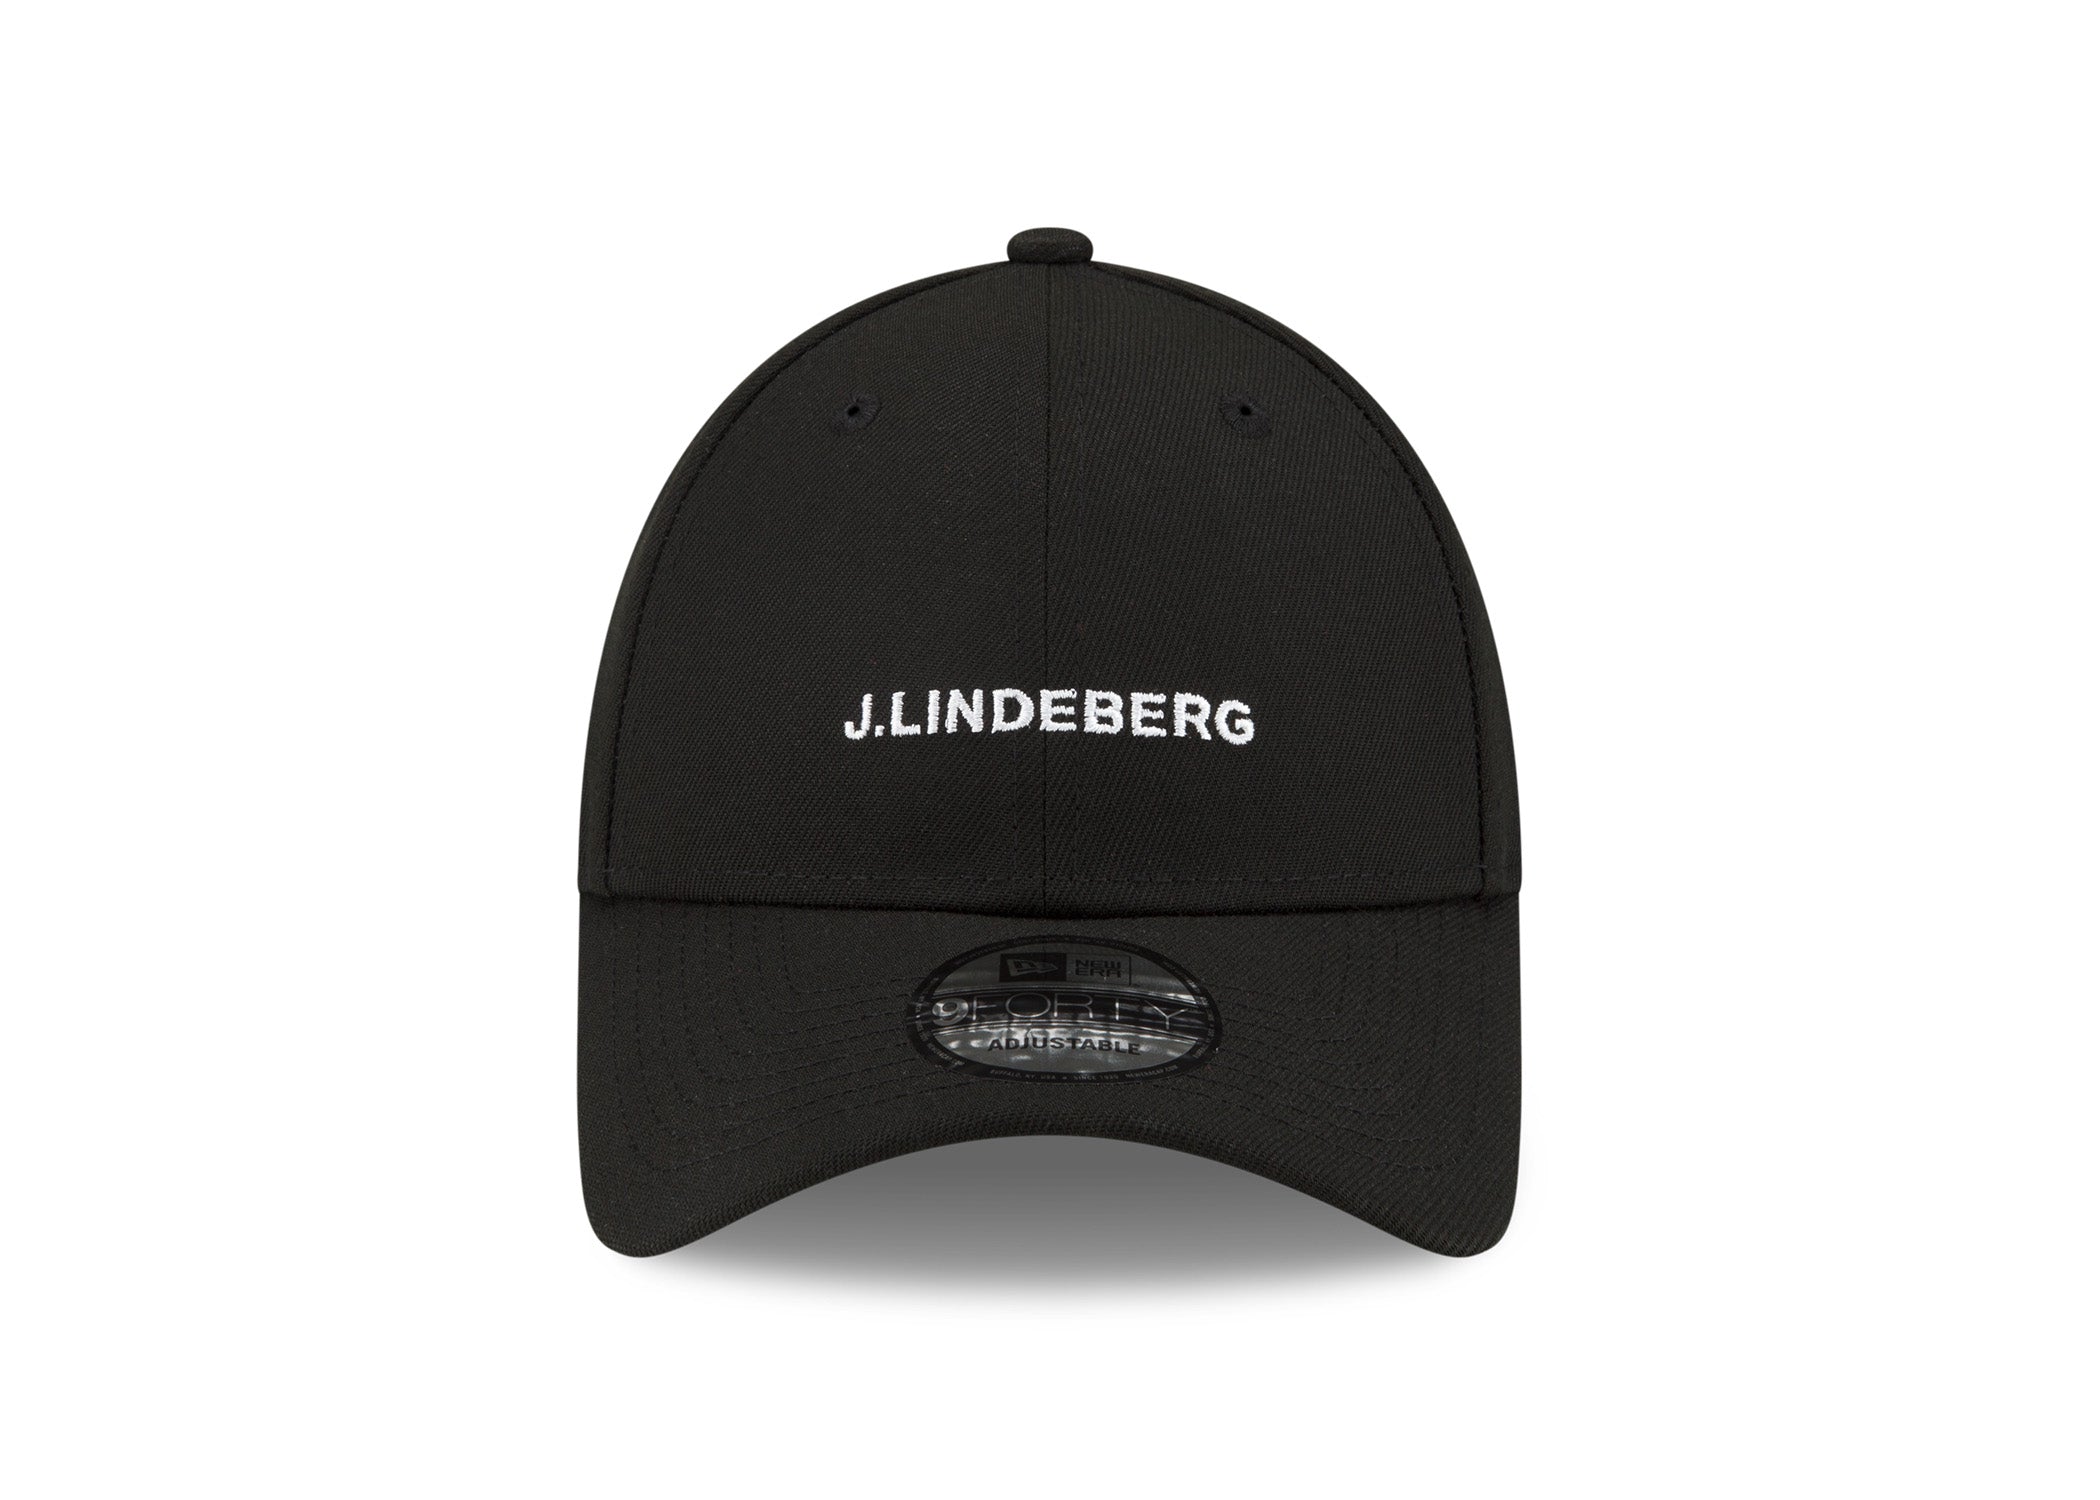 제이린드버그 J.LINDEBERG JL x New Era 9FORTY Black/White